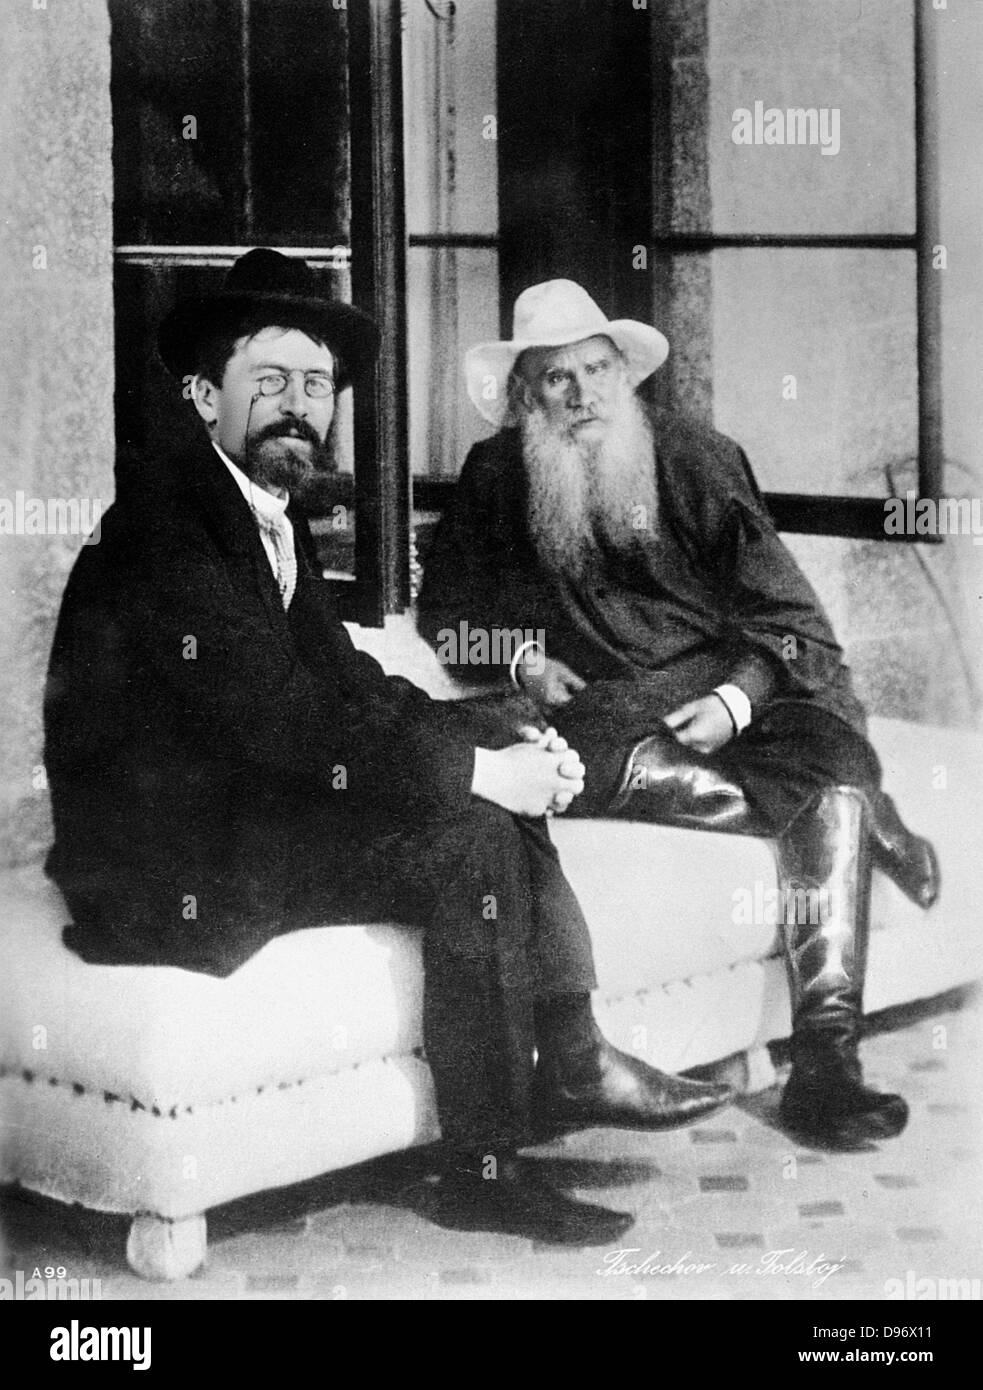 Anton Chewkhov (1860-1904) russischer Schriftsteller, Links, mit Leo Tolstoi (1828-1910) russischer Schriftsteller, Philosoph und Mystiker. Foto. Stockfoto